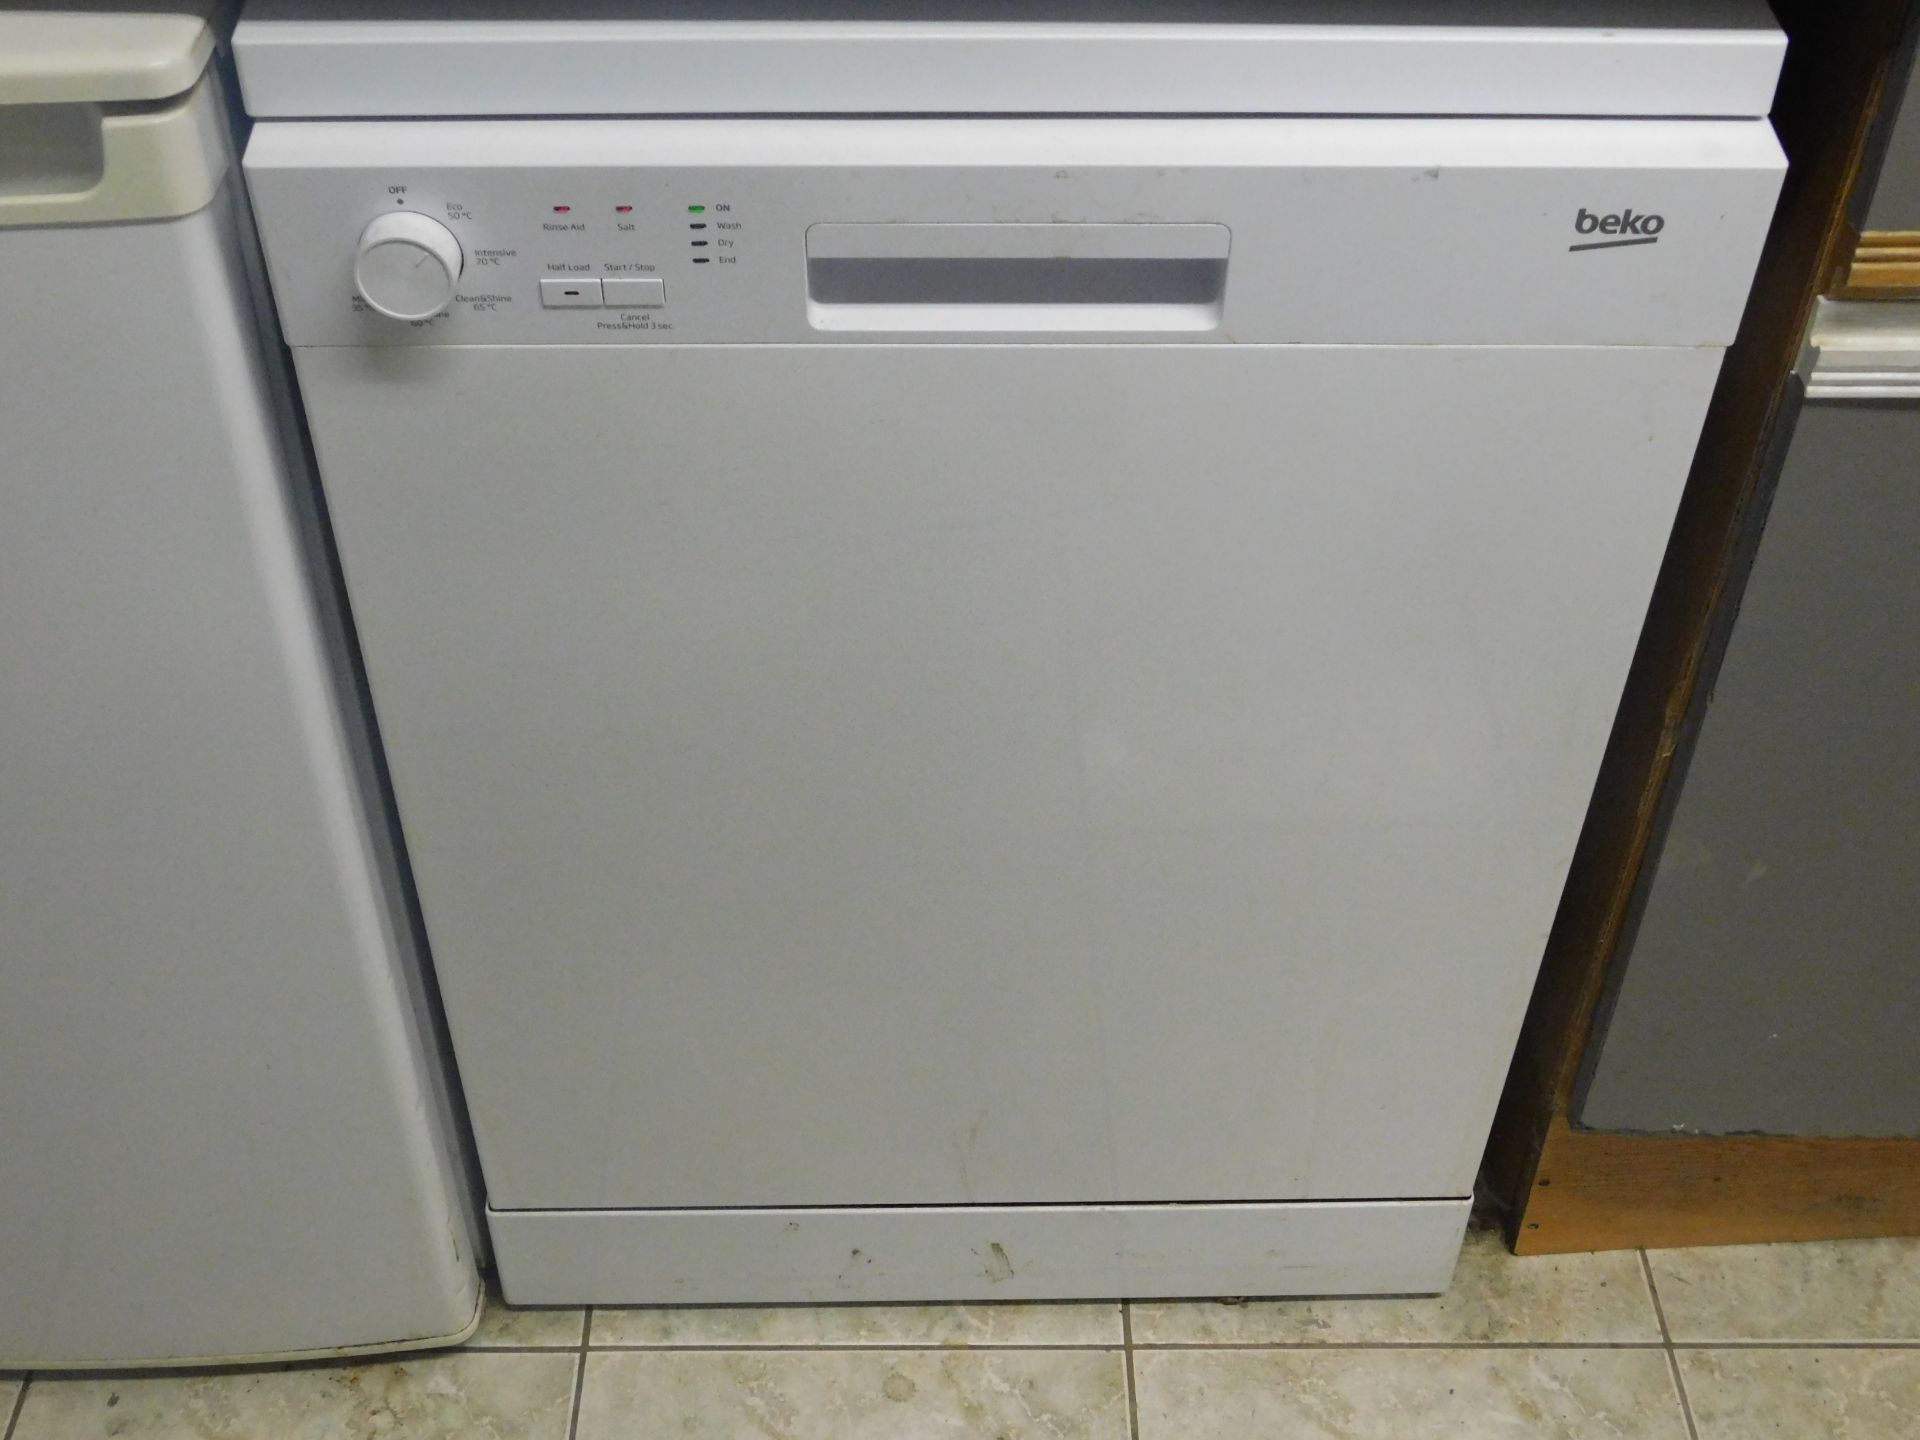 Kenwood Domestic Microwave, IceKing Fridge & Beko Dishwasher (Location Ashford, Kent. Please Refer - Image 3 of 3